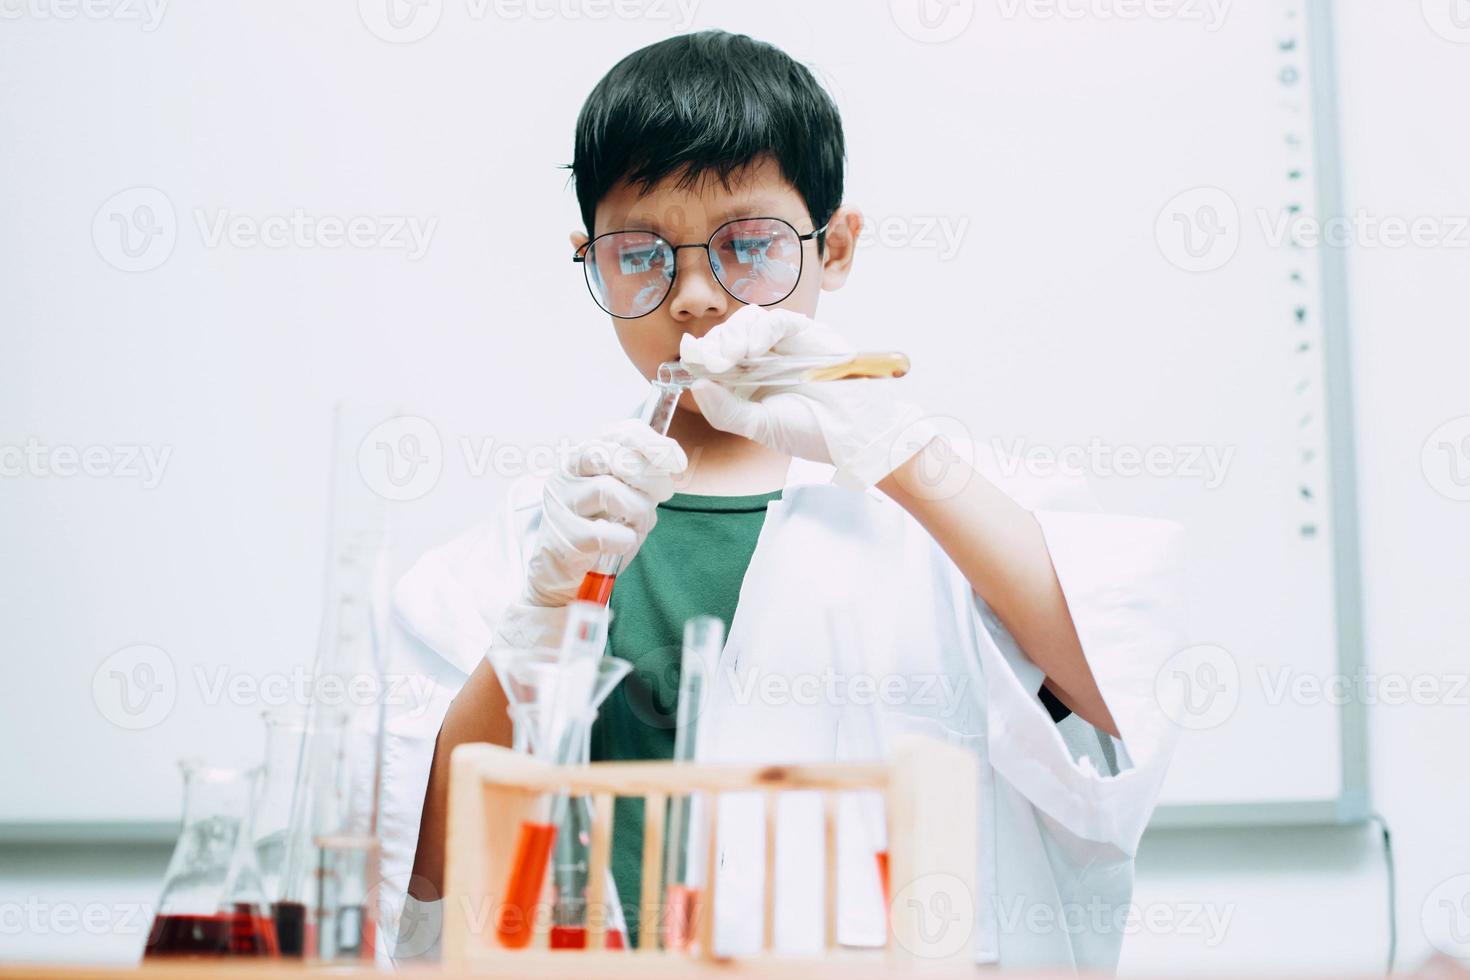 studente ragazzo asiatico con provette che studia chimica al laboratorio scolastico, versando liquido. giornata nazionale della scienza, giornata mondiale della scienza foto